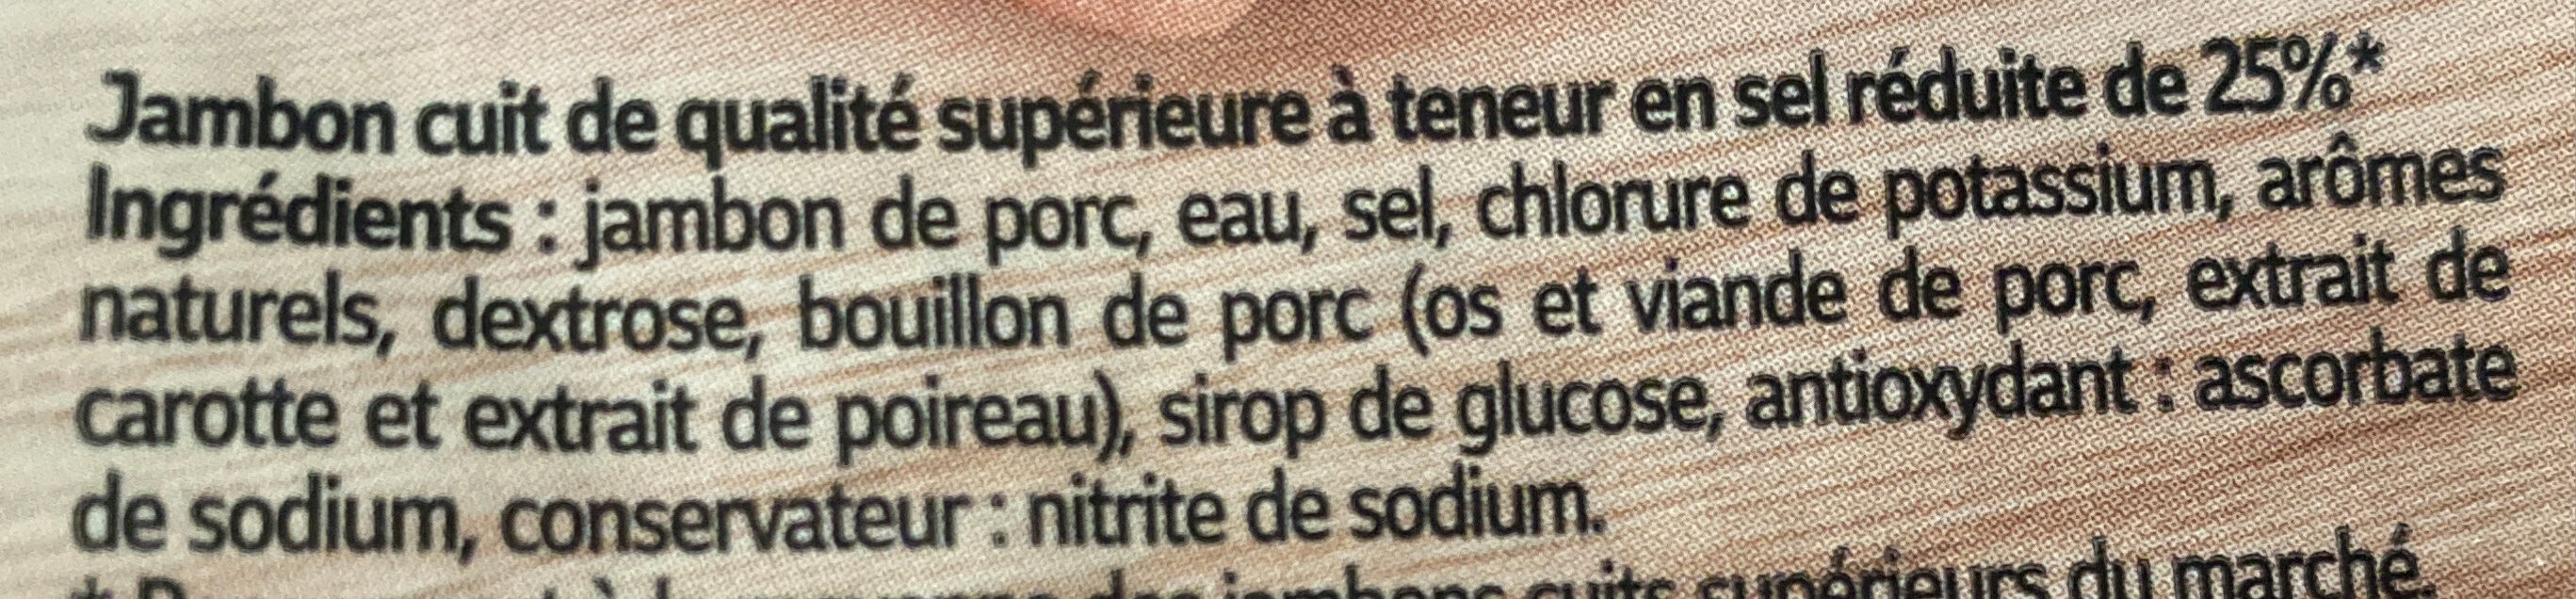 Jambon superieur sans couenne 4 tranches, moins 25% de sel - Ingrédients